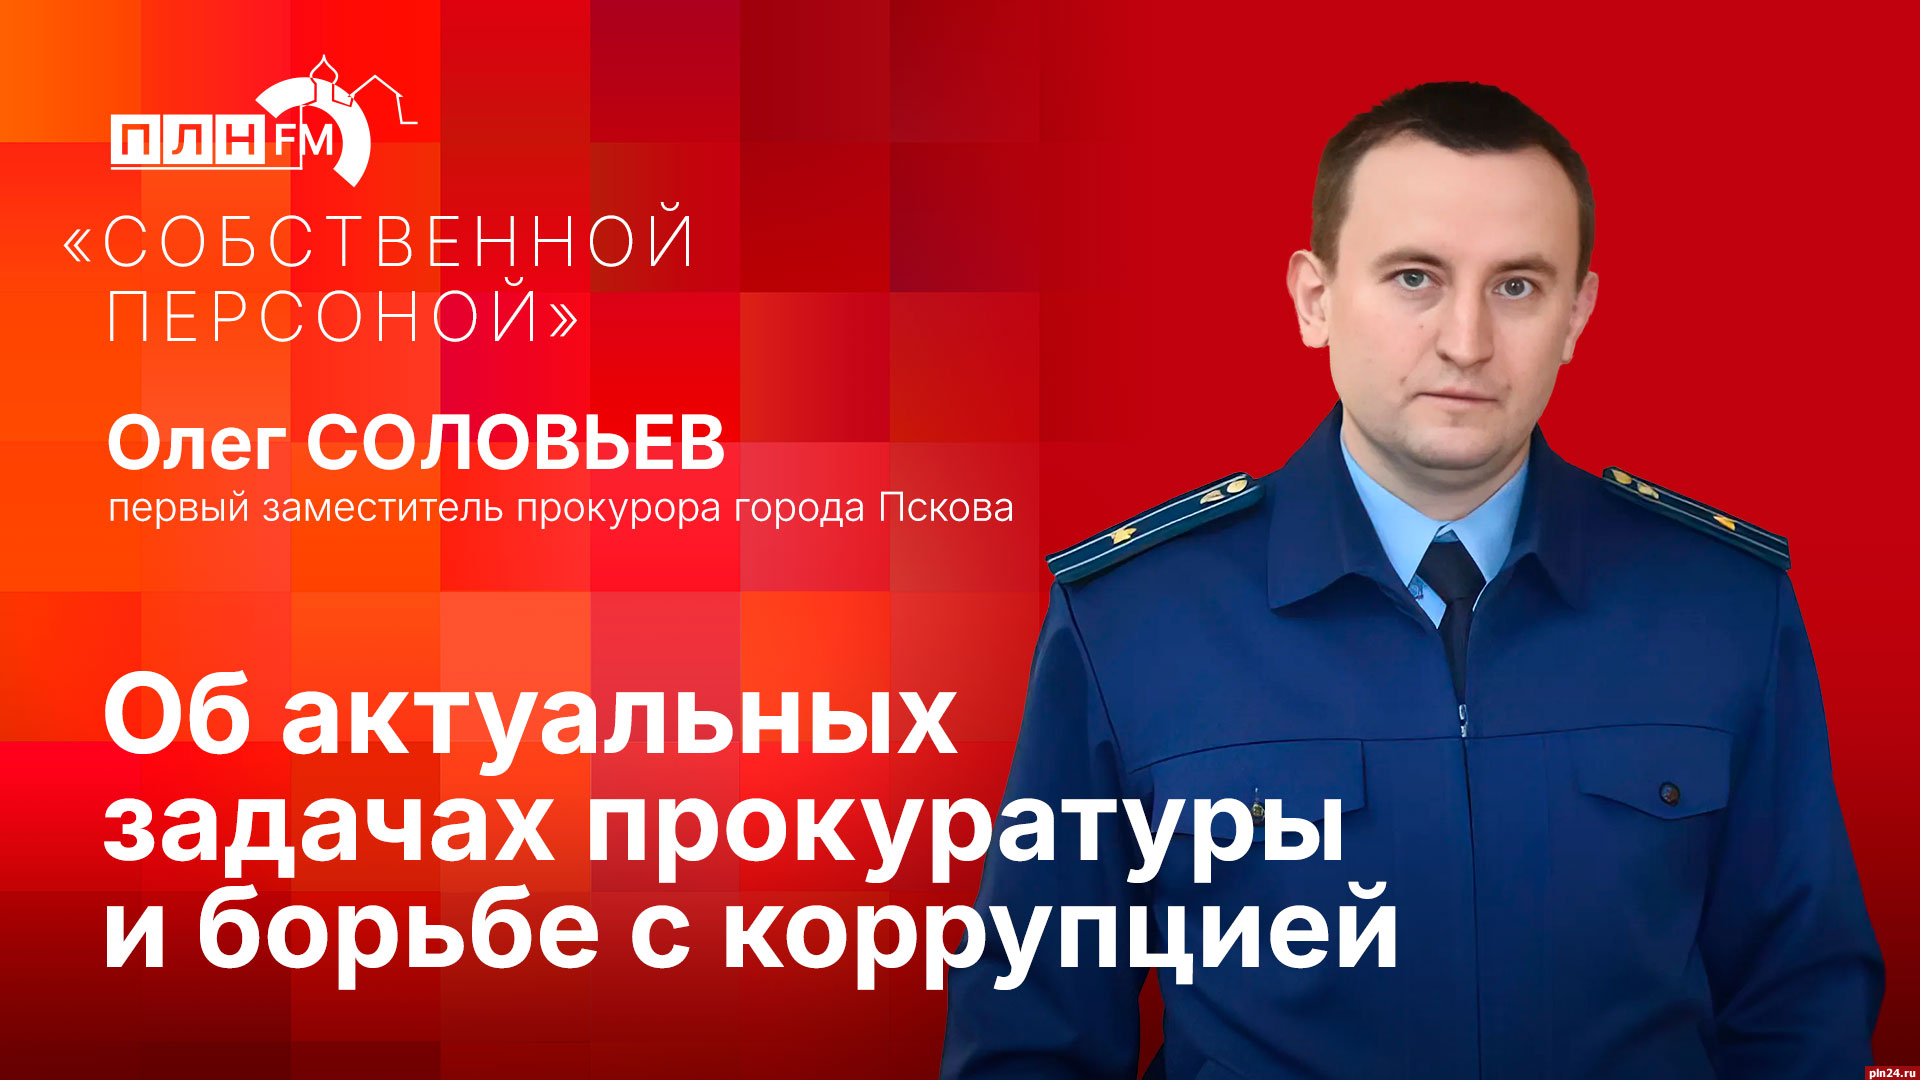 Начинается видеотрансляция программы «Собственной персоной» с первым зампрокурора Пскова Олегом Соловьевым